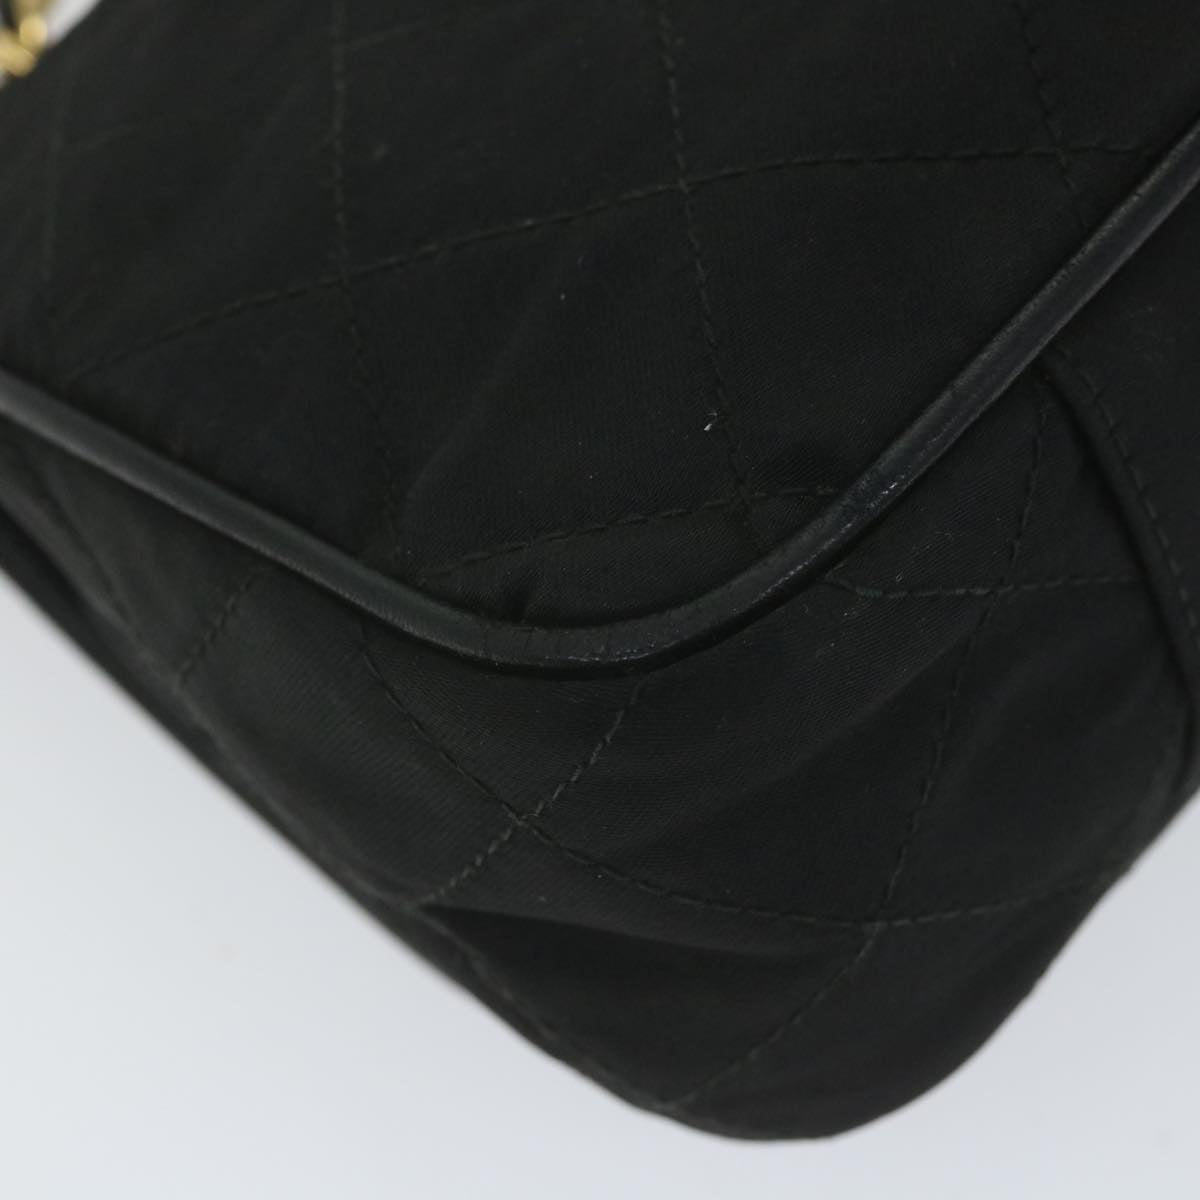 CHANEL Sequin Chain Shoulder Bag Nylon Black CC Auth bs9682